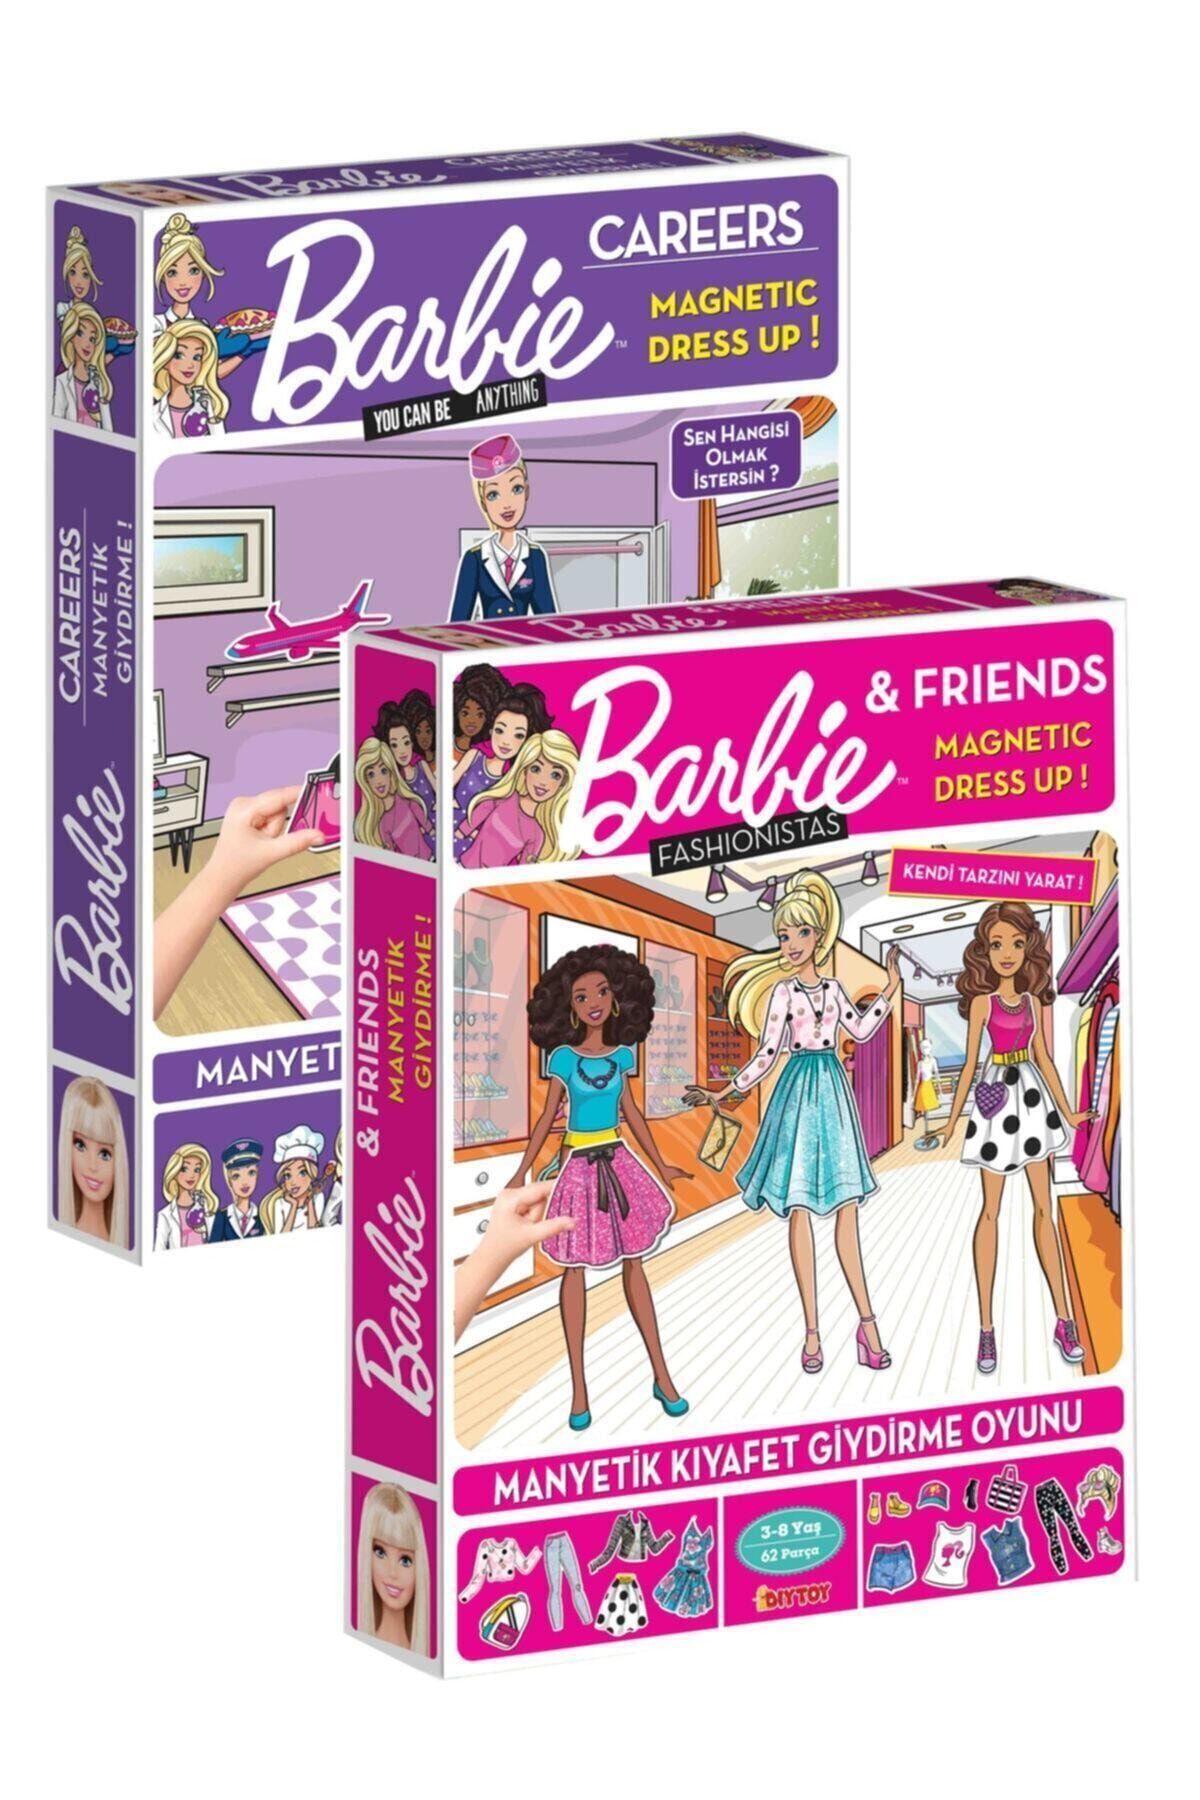 Diytoy Barbie Manyetik Kıyafet Giydirme Ve Barbie Diytoy Manyetik Kıyafet Giydirme Oyunu Lisanslı